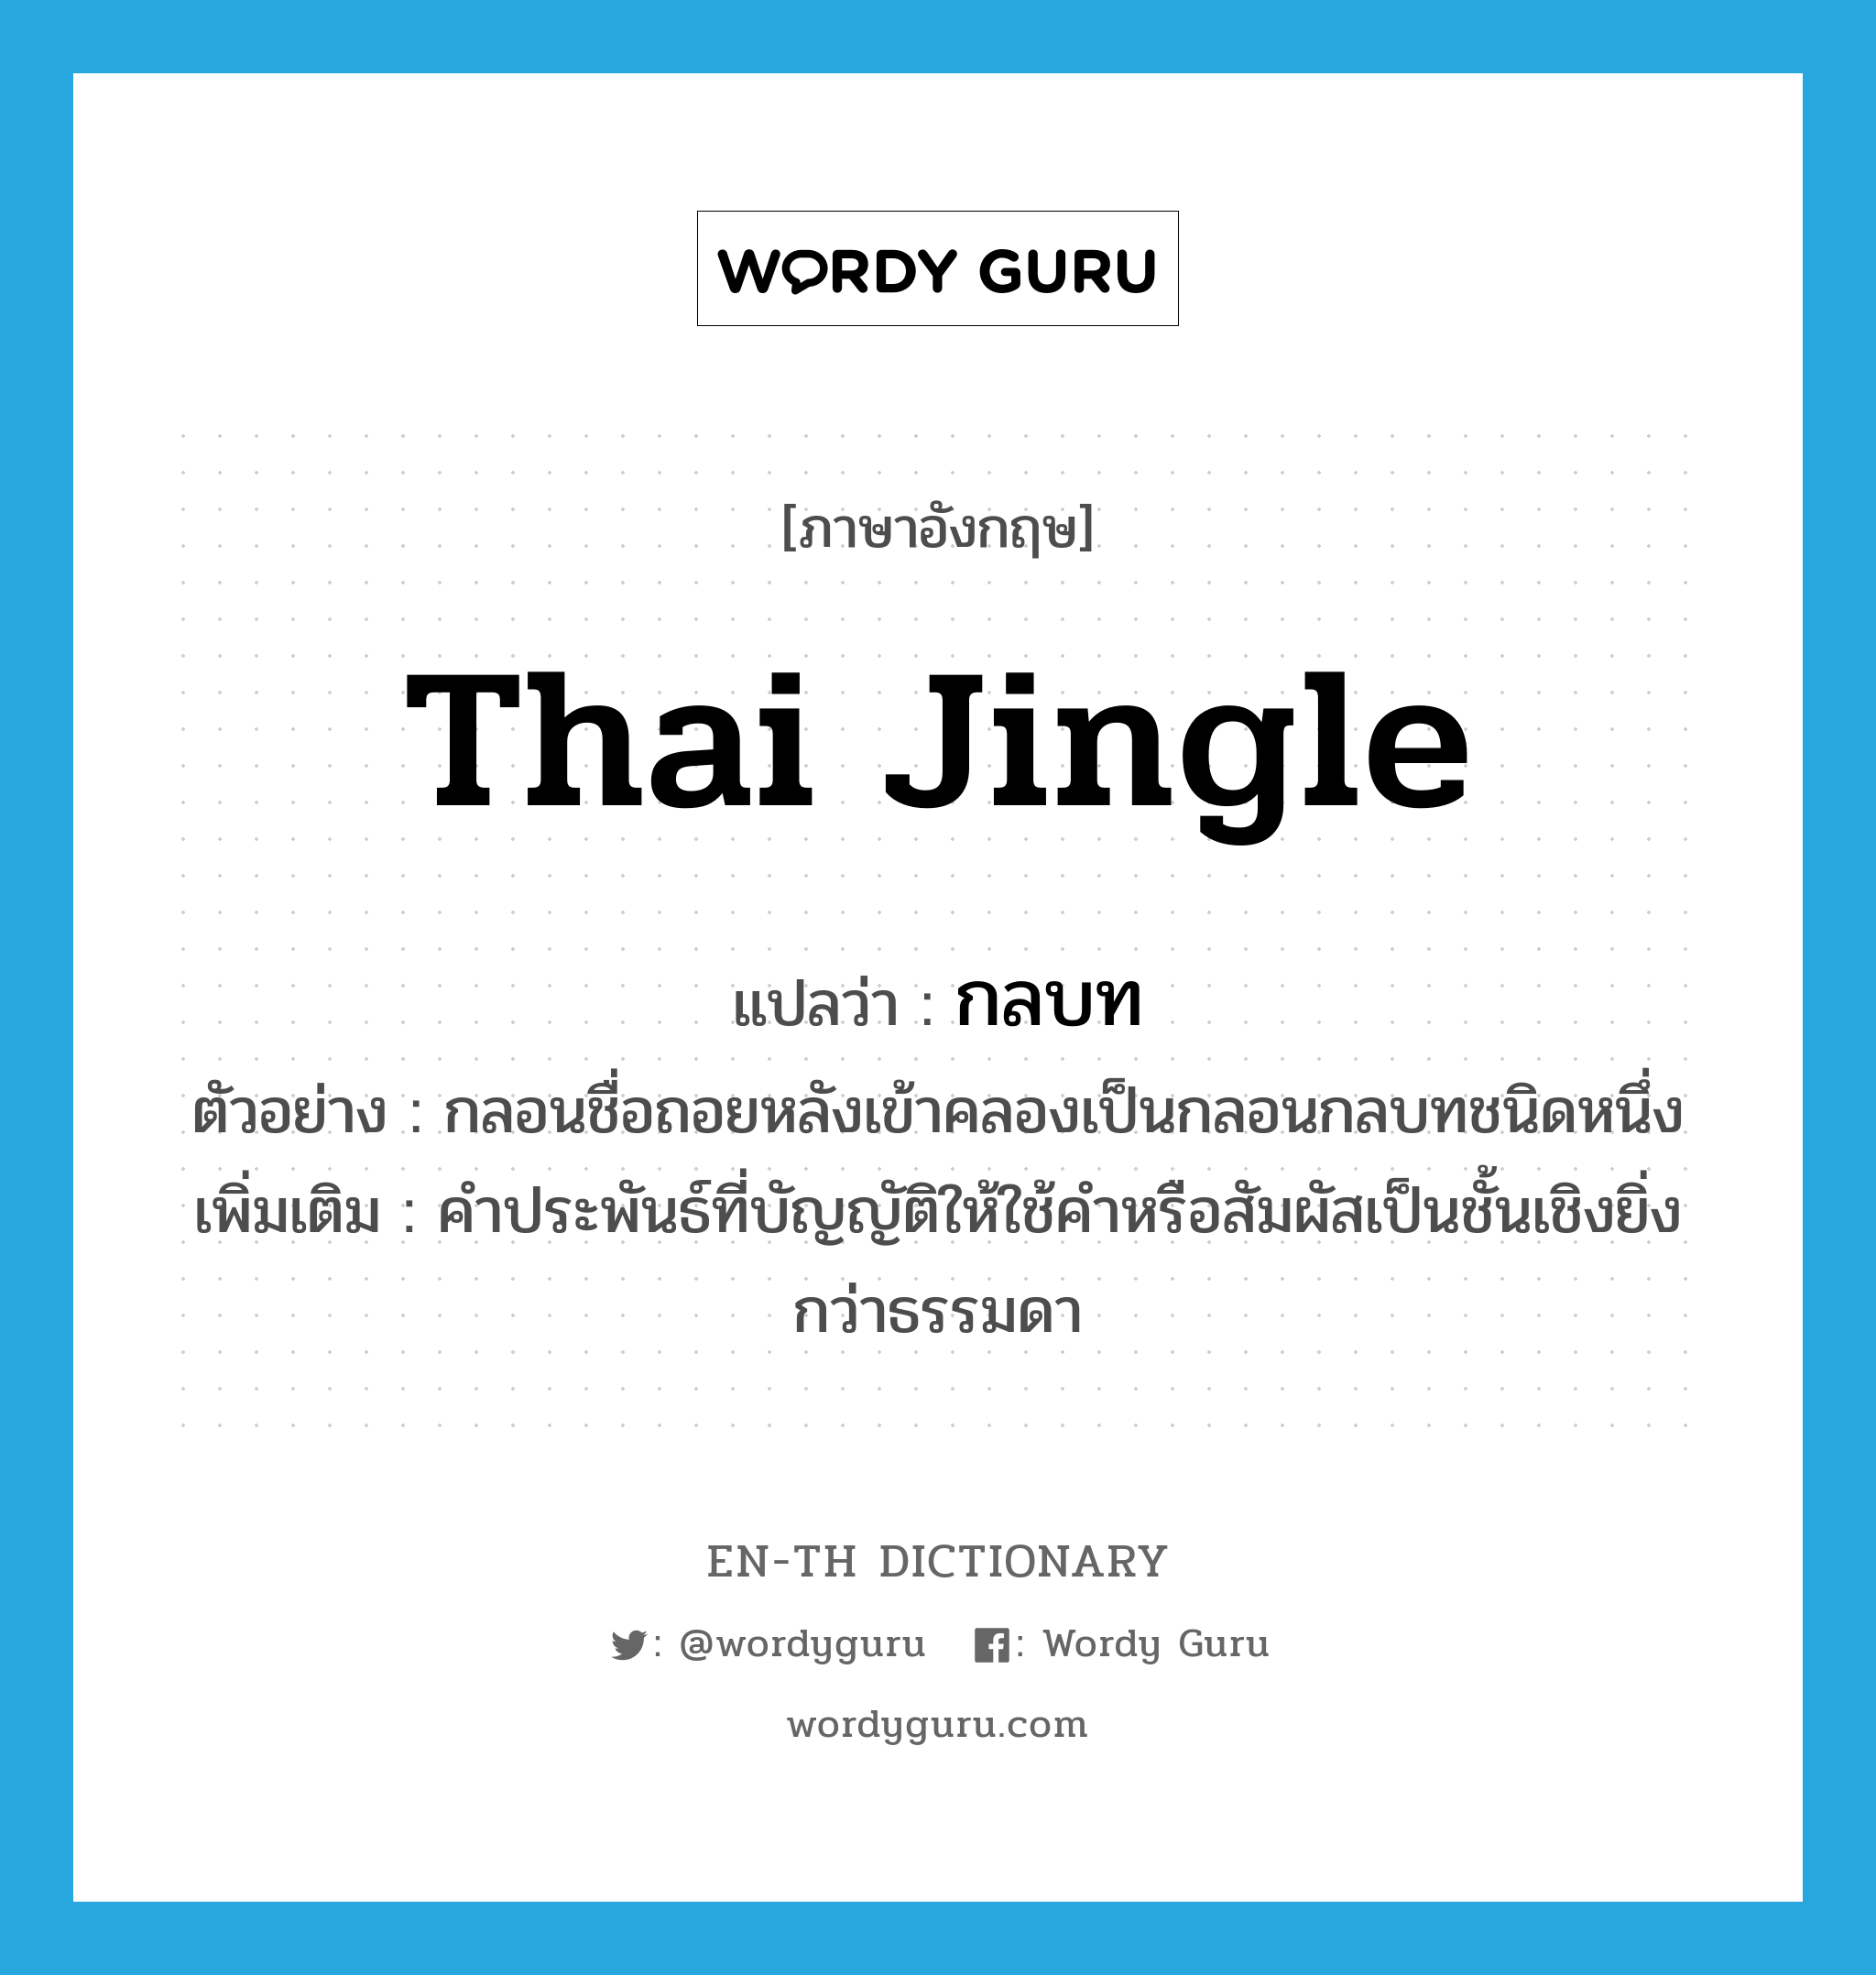 กลบท ภาษาอังกฤษ?, คำศัพท์ภาษาอังกฤษ กลบท แปลว่า Thai jingle ประเภท N ตัวอย่าง กลอนชื่อถอยหลังเข้าคลองเป็นกลอนกลบทชนิดหนึ่ง เพิ่มเติม คำประพันธ์ที่บัญญัติให้ใช้คำหรือสัมผัสเป็นชั้นเชิงยิ่งกว่าธรรมดา หมวด N